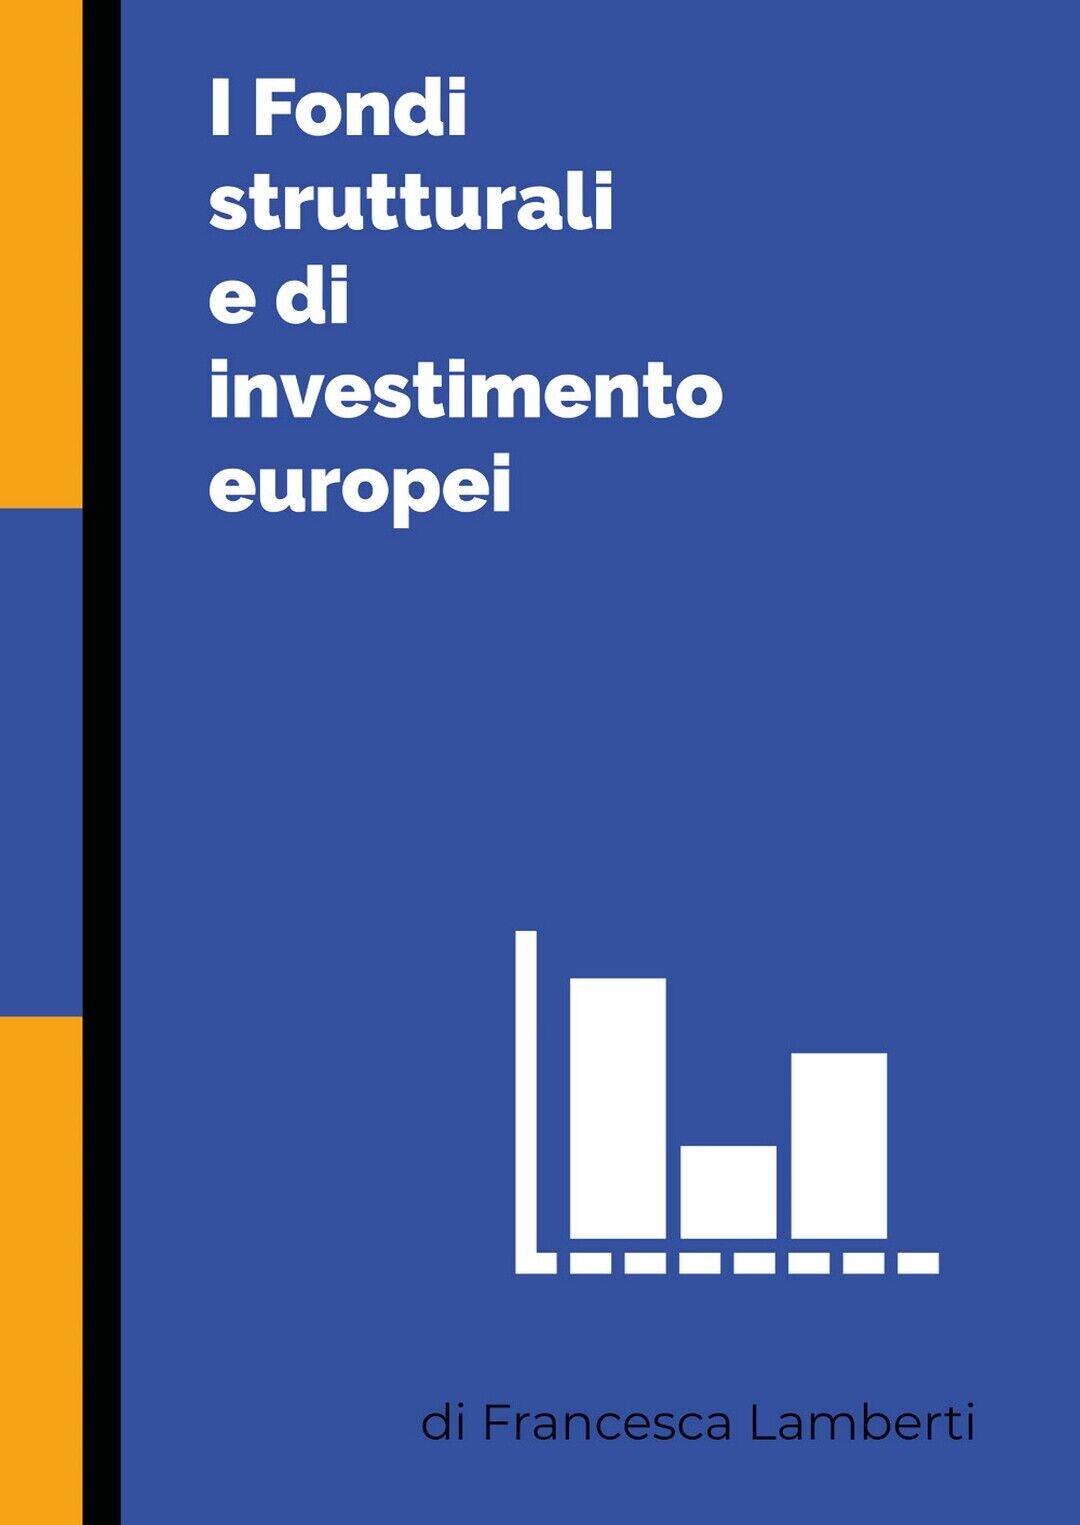 I Fondi strutturali e di investimento europei  di Francesca Lamberti,  2020 libro usato